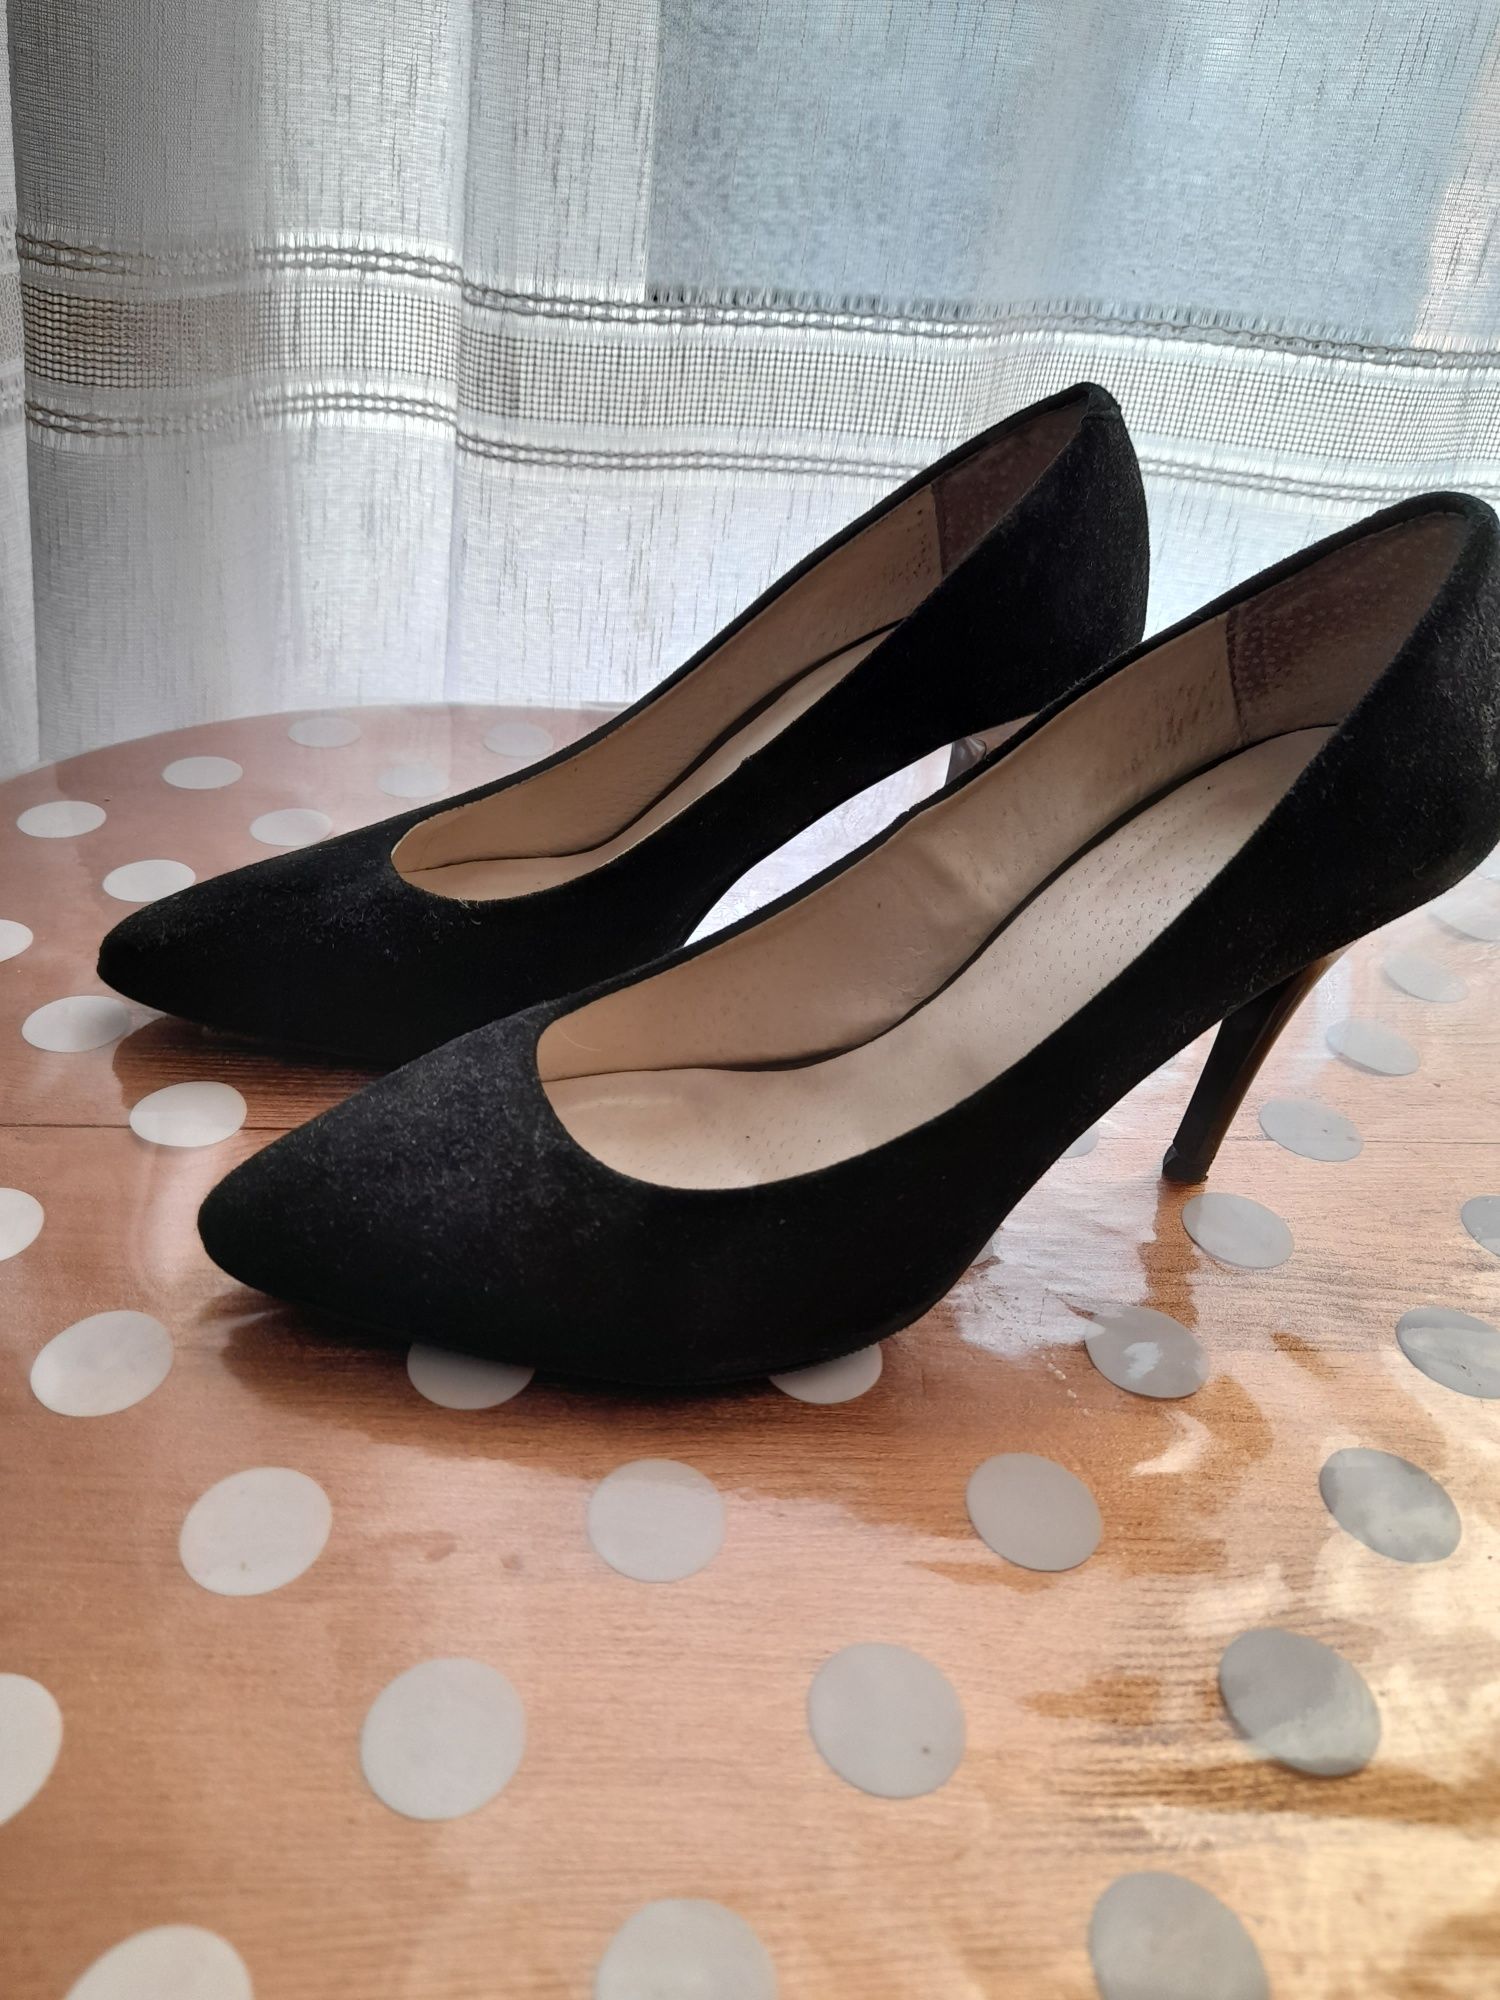 Жіночі замшеві чорні туфлі,в доброму стані ,хороший замш,качественні т